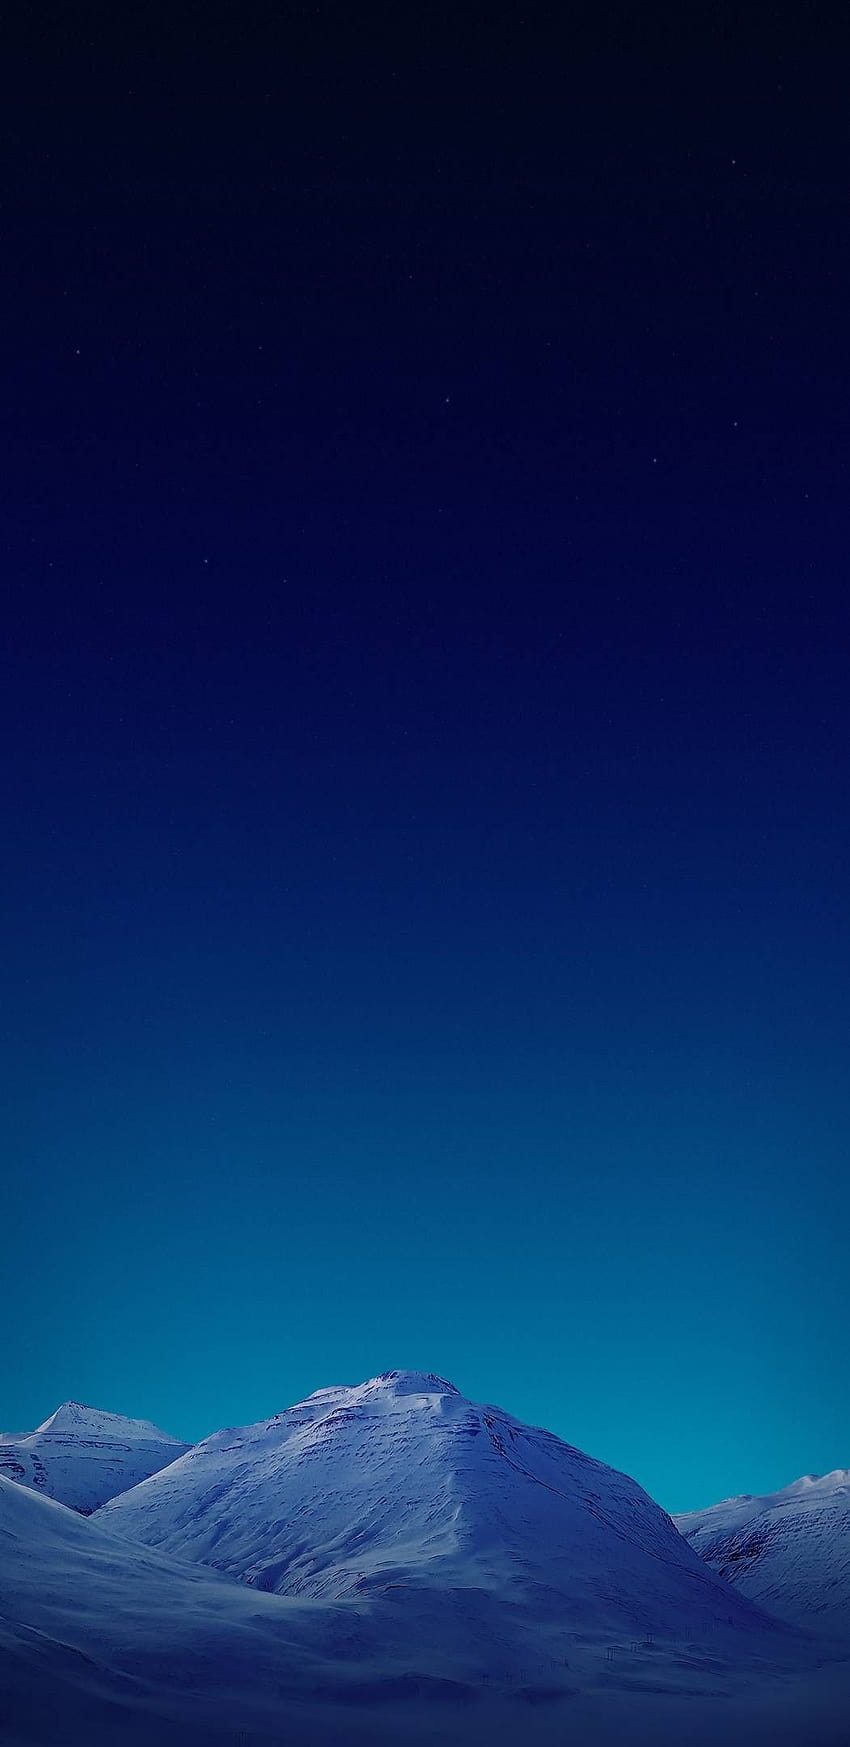 Night, sky, blue, mountain, clean, galaxy, colour, blue mountain phone HD phone wallpaper